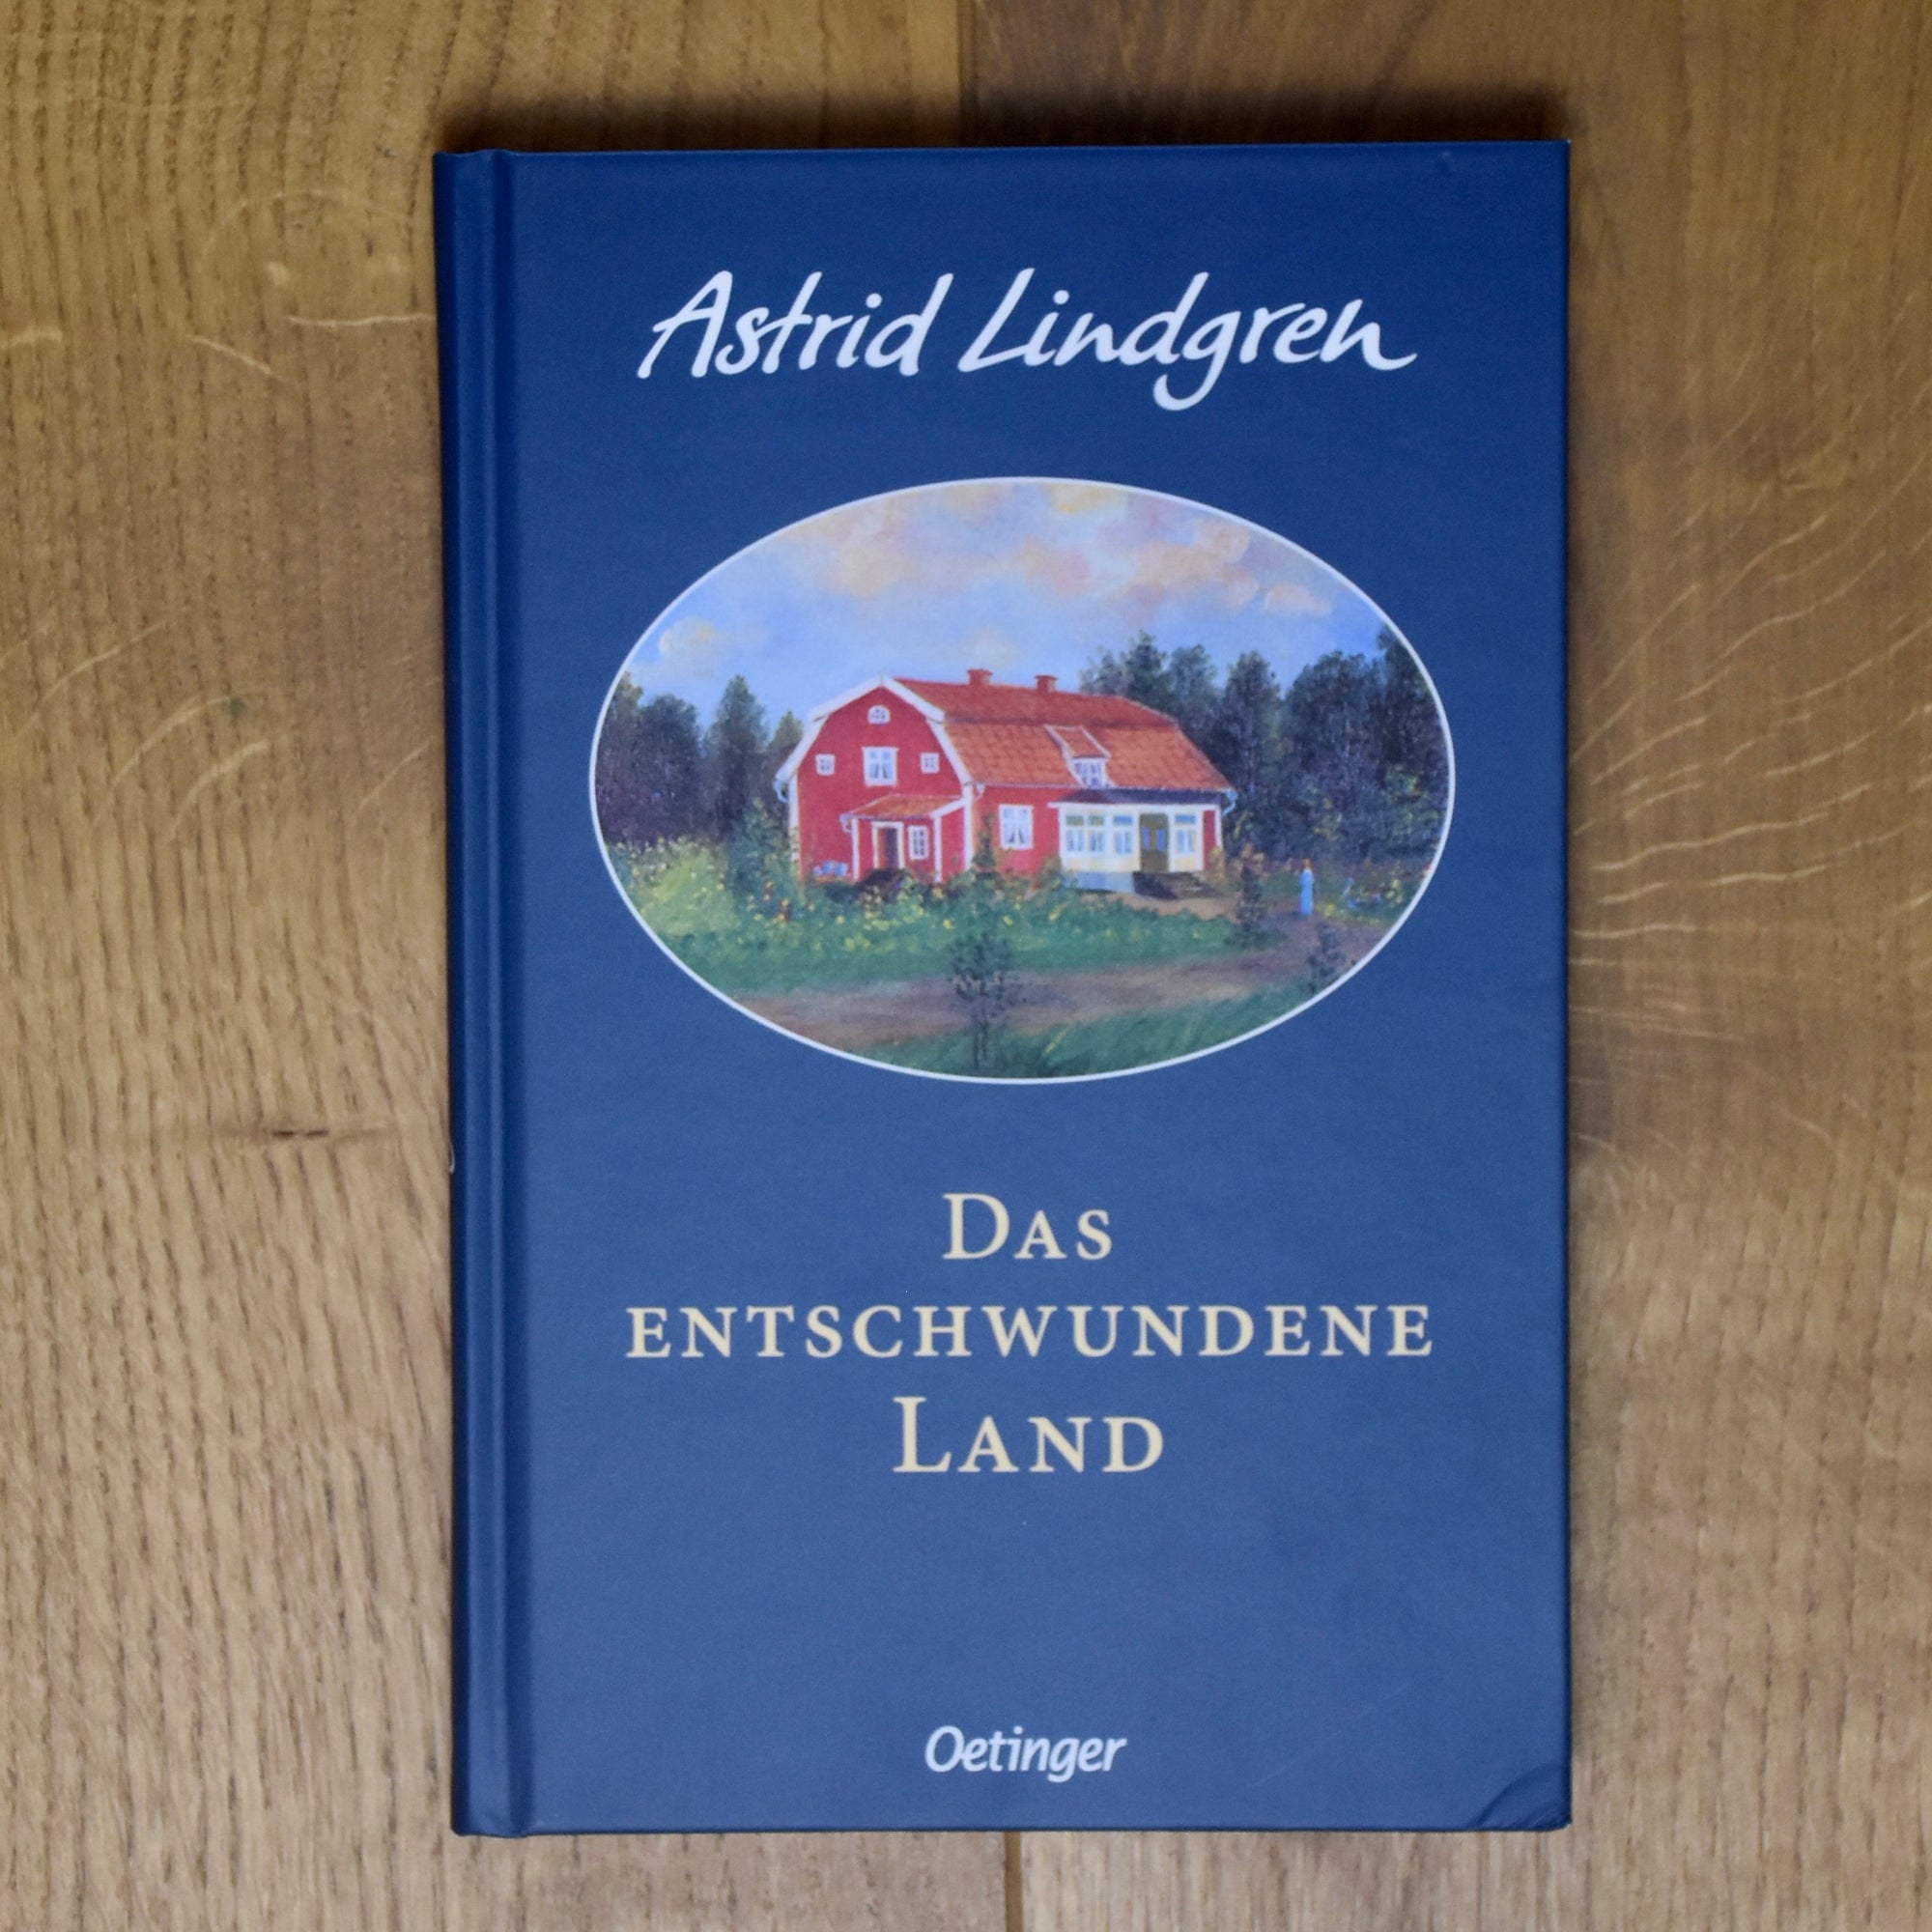 Das entschwundene Land (Astrid Lindgren)